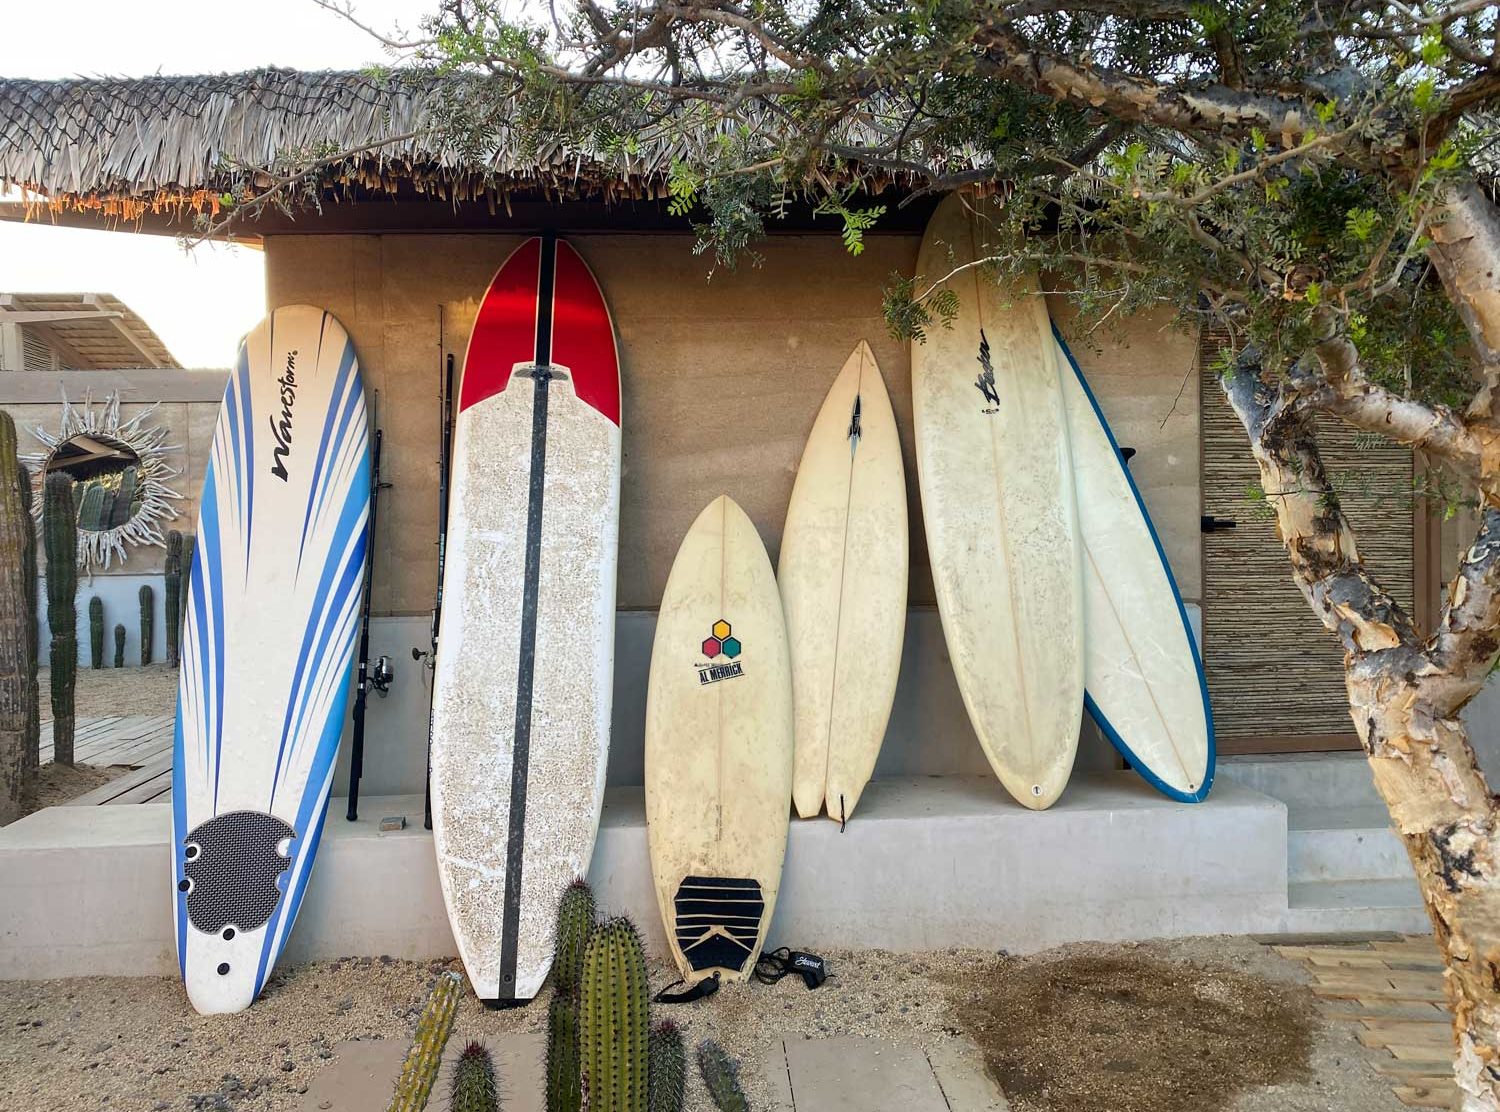 El Perdido Or grab a board and head to Cerritos beach